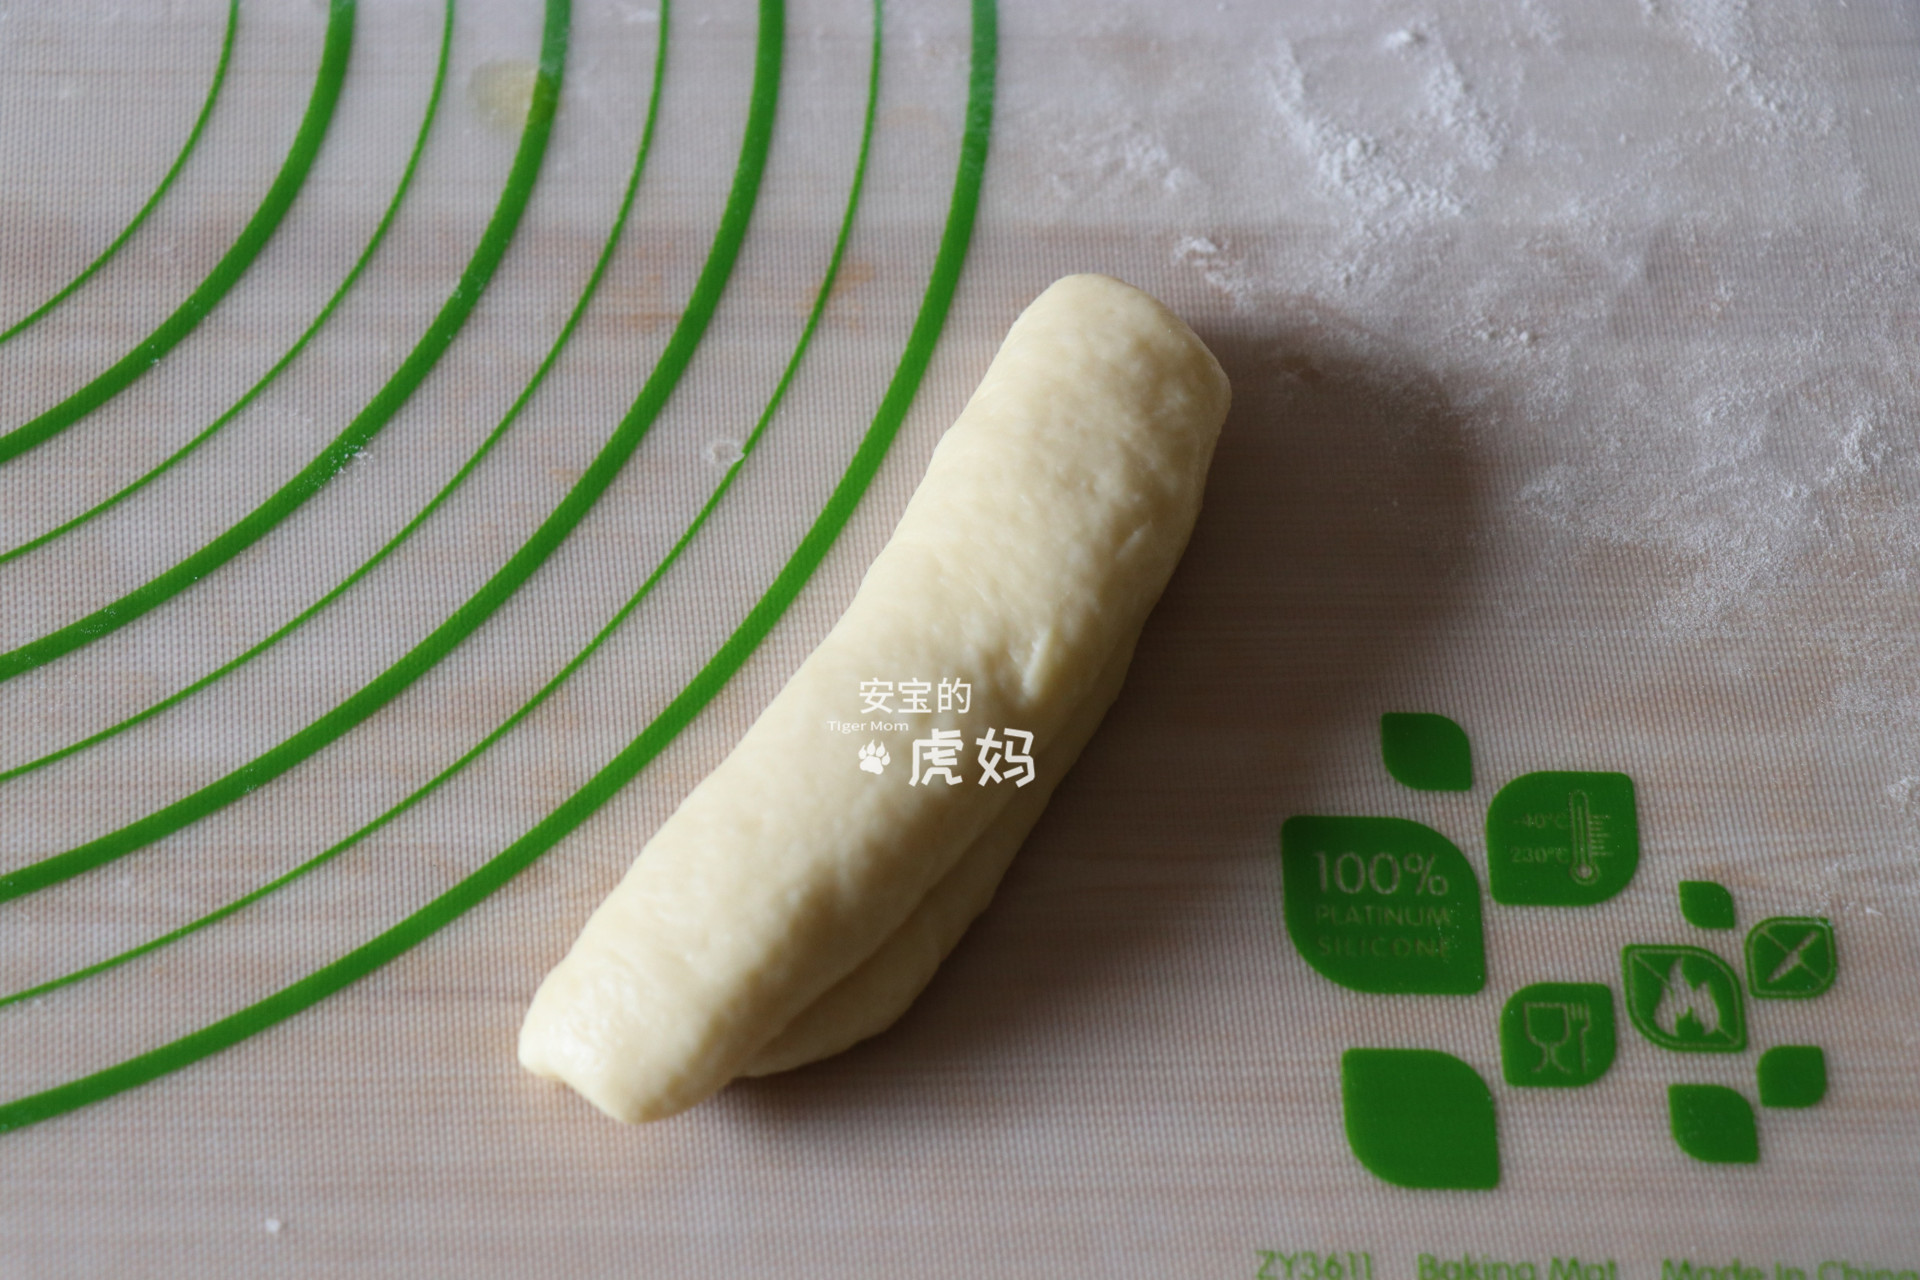 黄油卷 今天来跟大家分享一个黄油卷的做法,这个面包整形手法相对简单